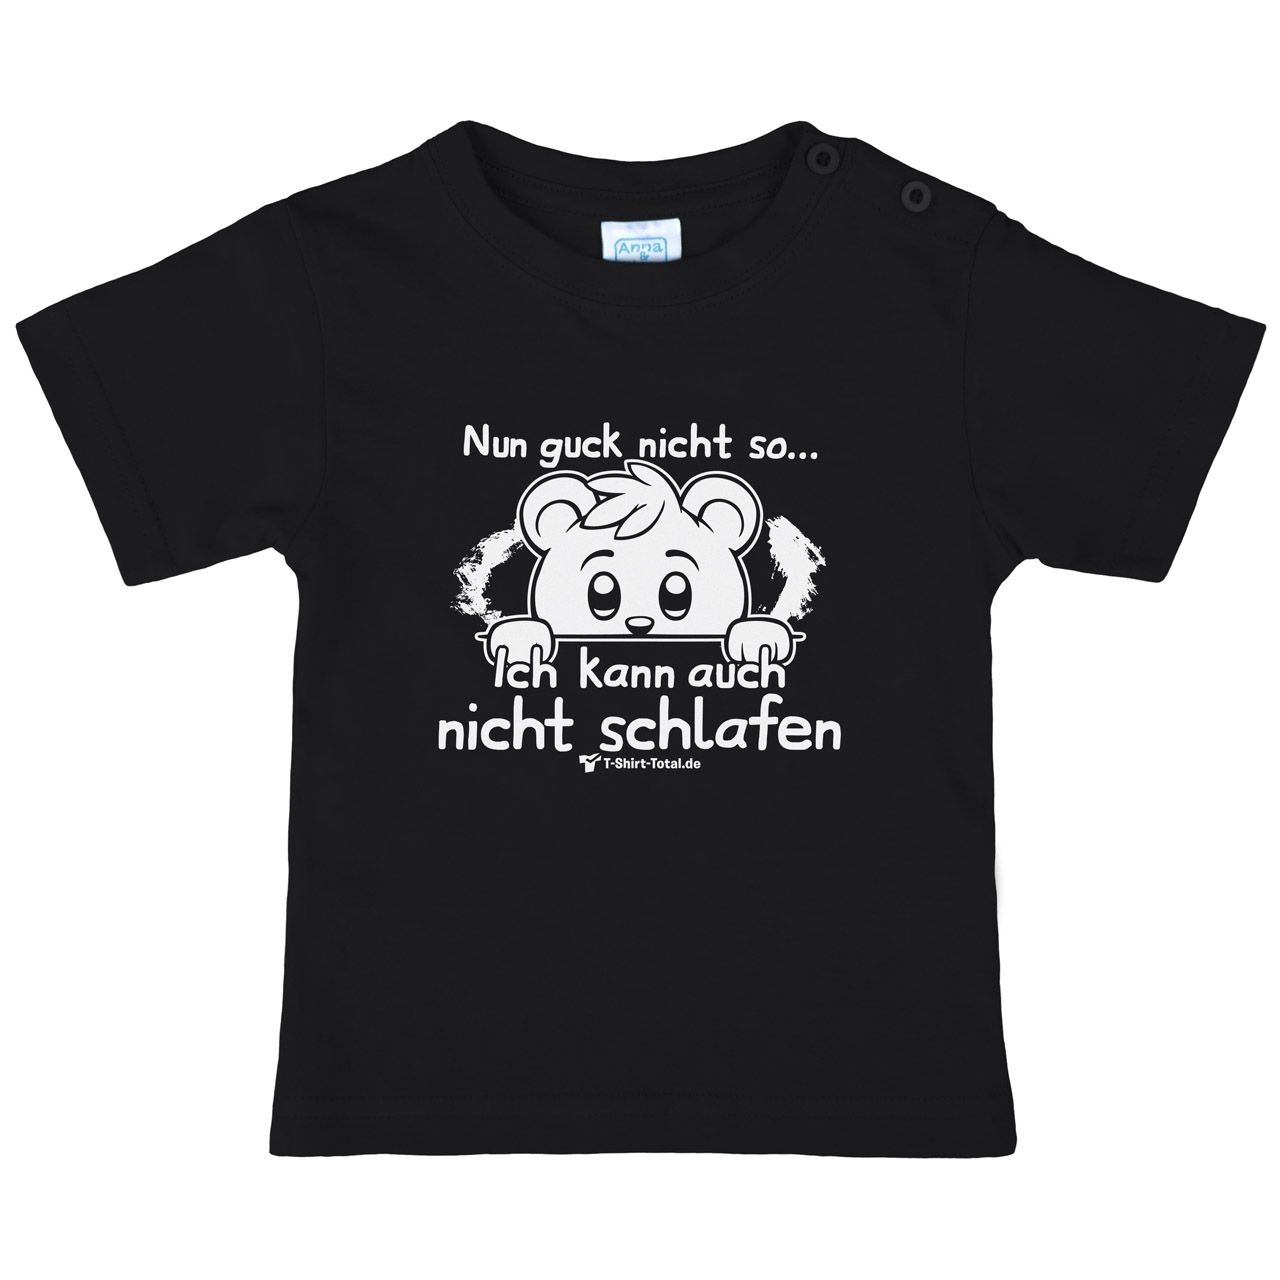 Guck nicht so Kinder T-Shirt schwarz 68 / 74